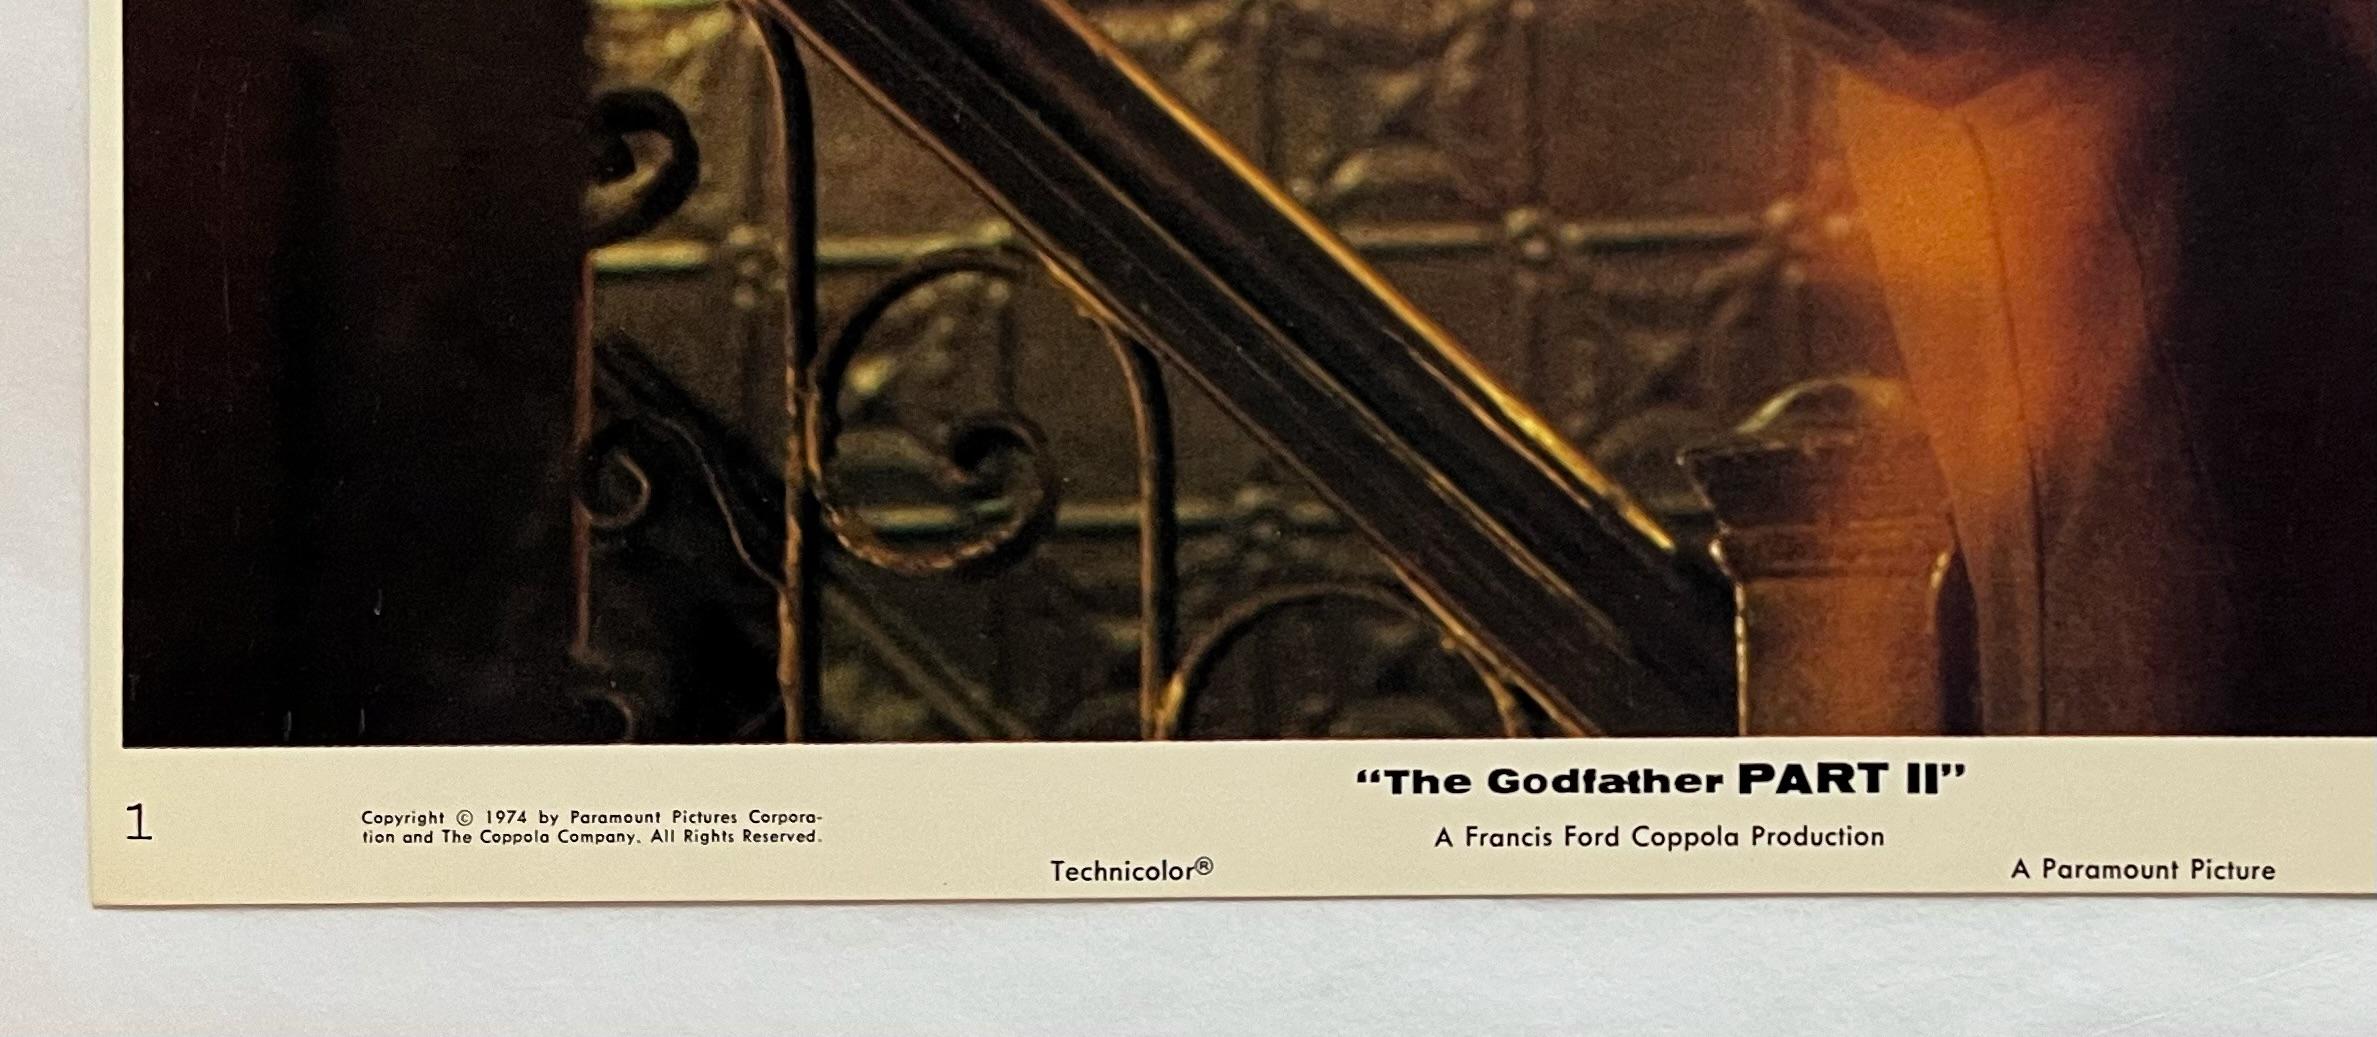 Le Parrain, deuxième partie - Carte de lobby originale de 1974 #1

Vintage 1974 The Godfather Part II Lobby Card :
Les débuts de la vie et de la carrière de Vito Corleone dans le New York des années 1920 sont décrits, tandis que son fils, Michael,